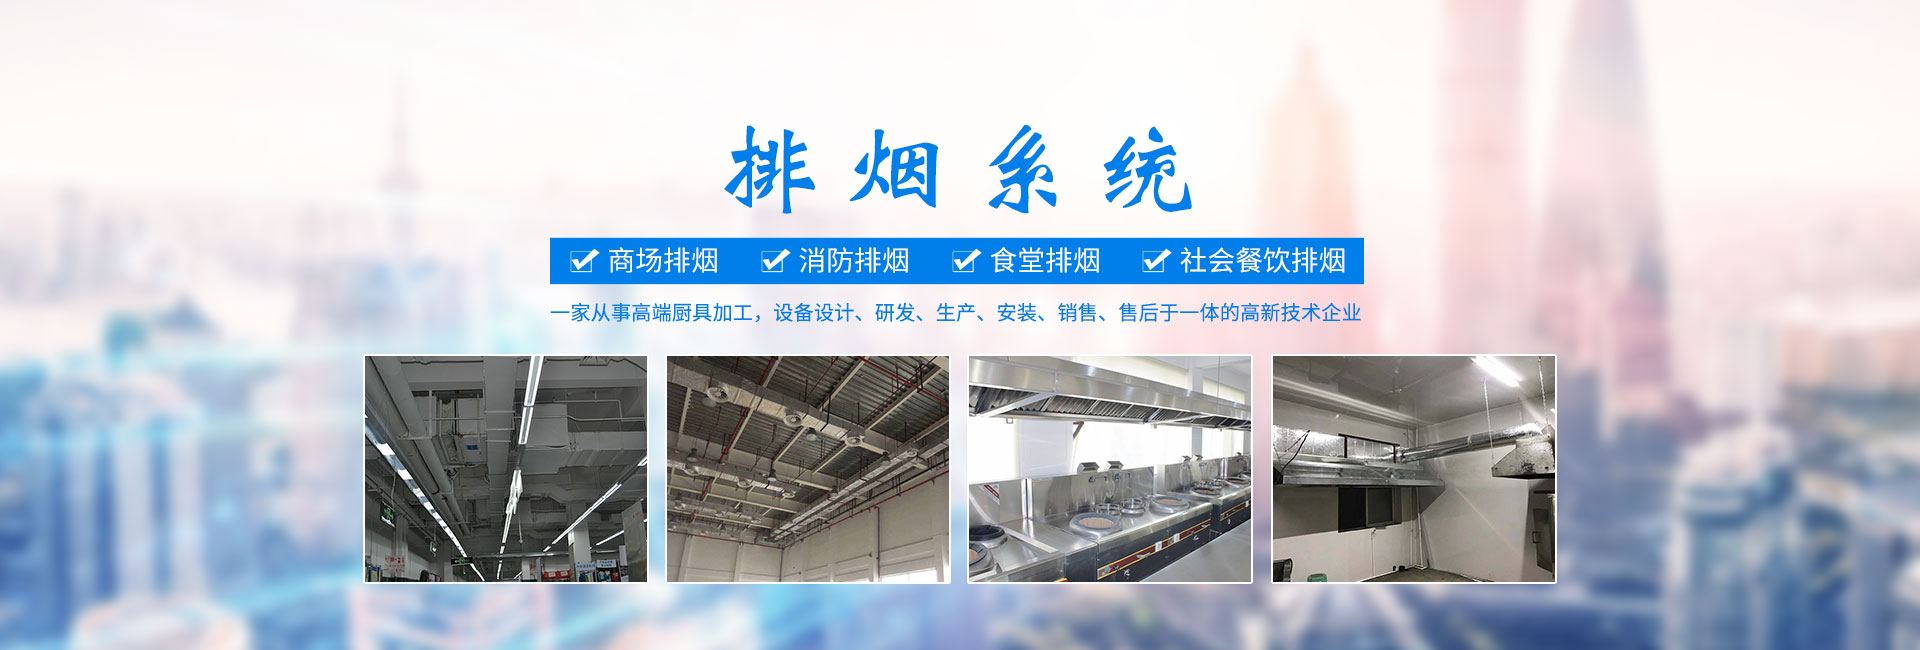 长沙福能达厨房设备有限公司_湖南厨具加工设备生产销售安装